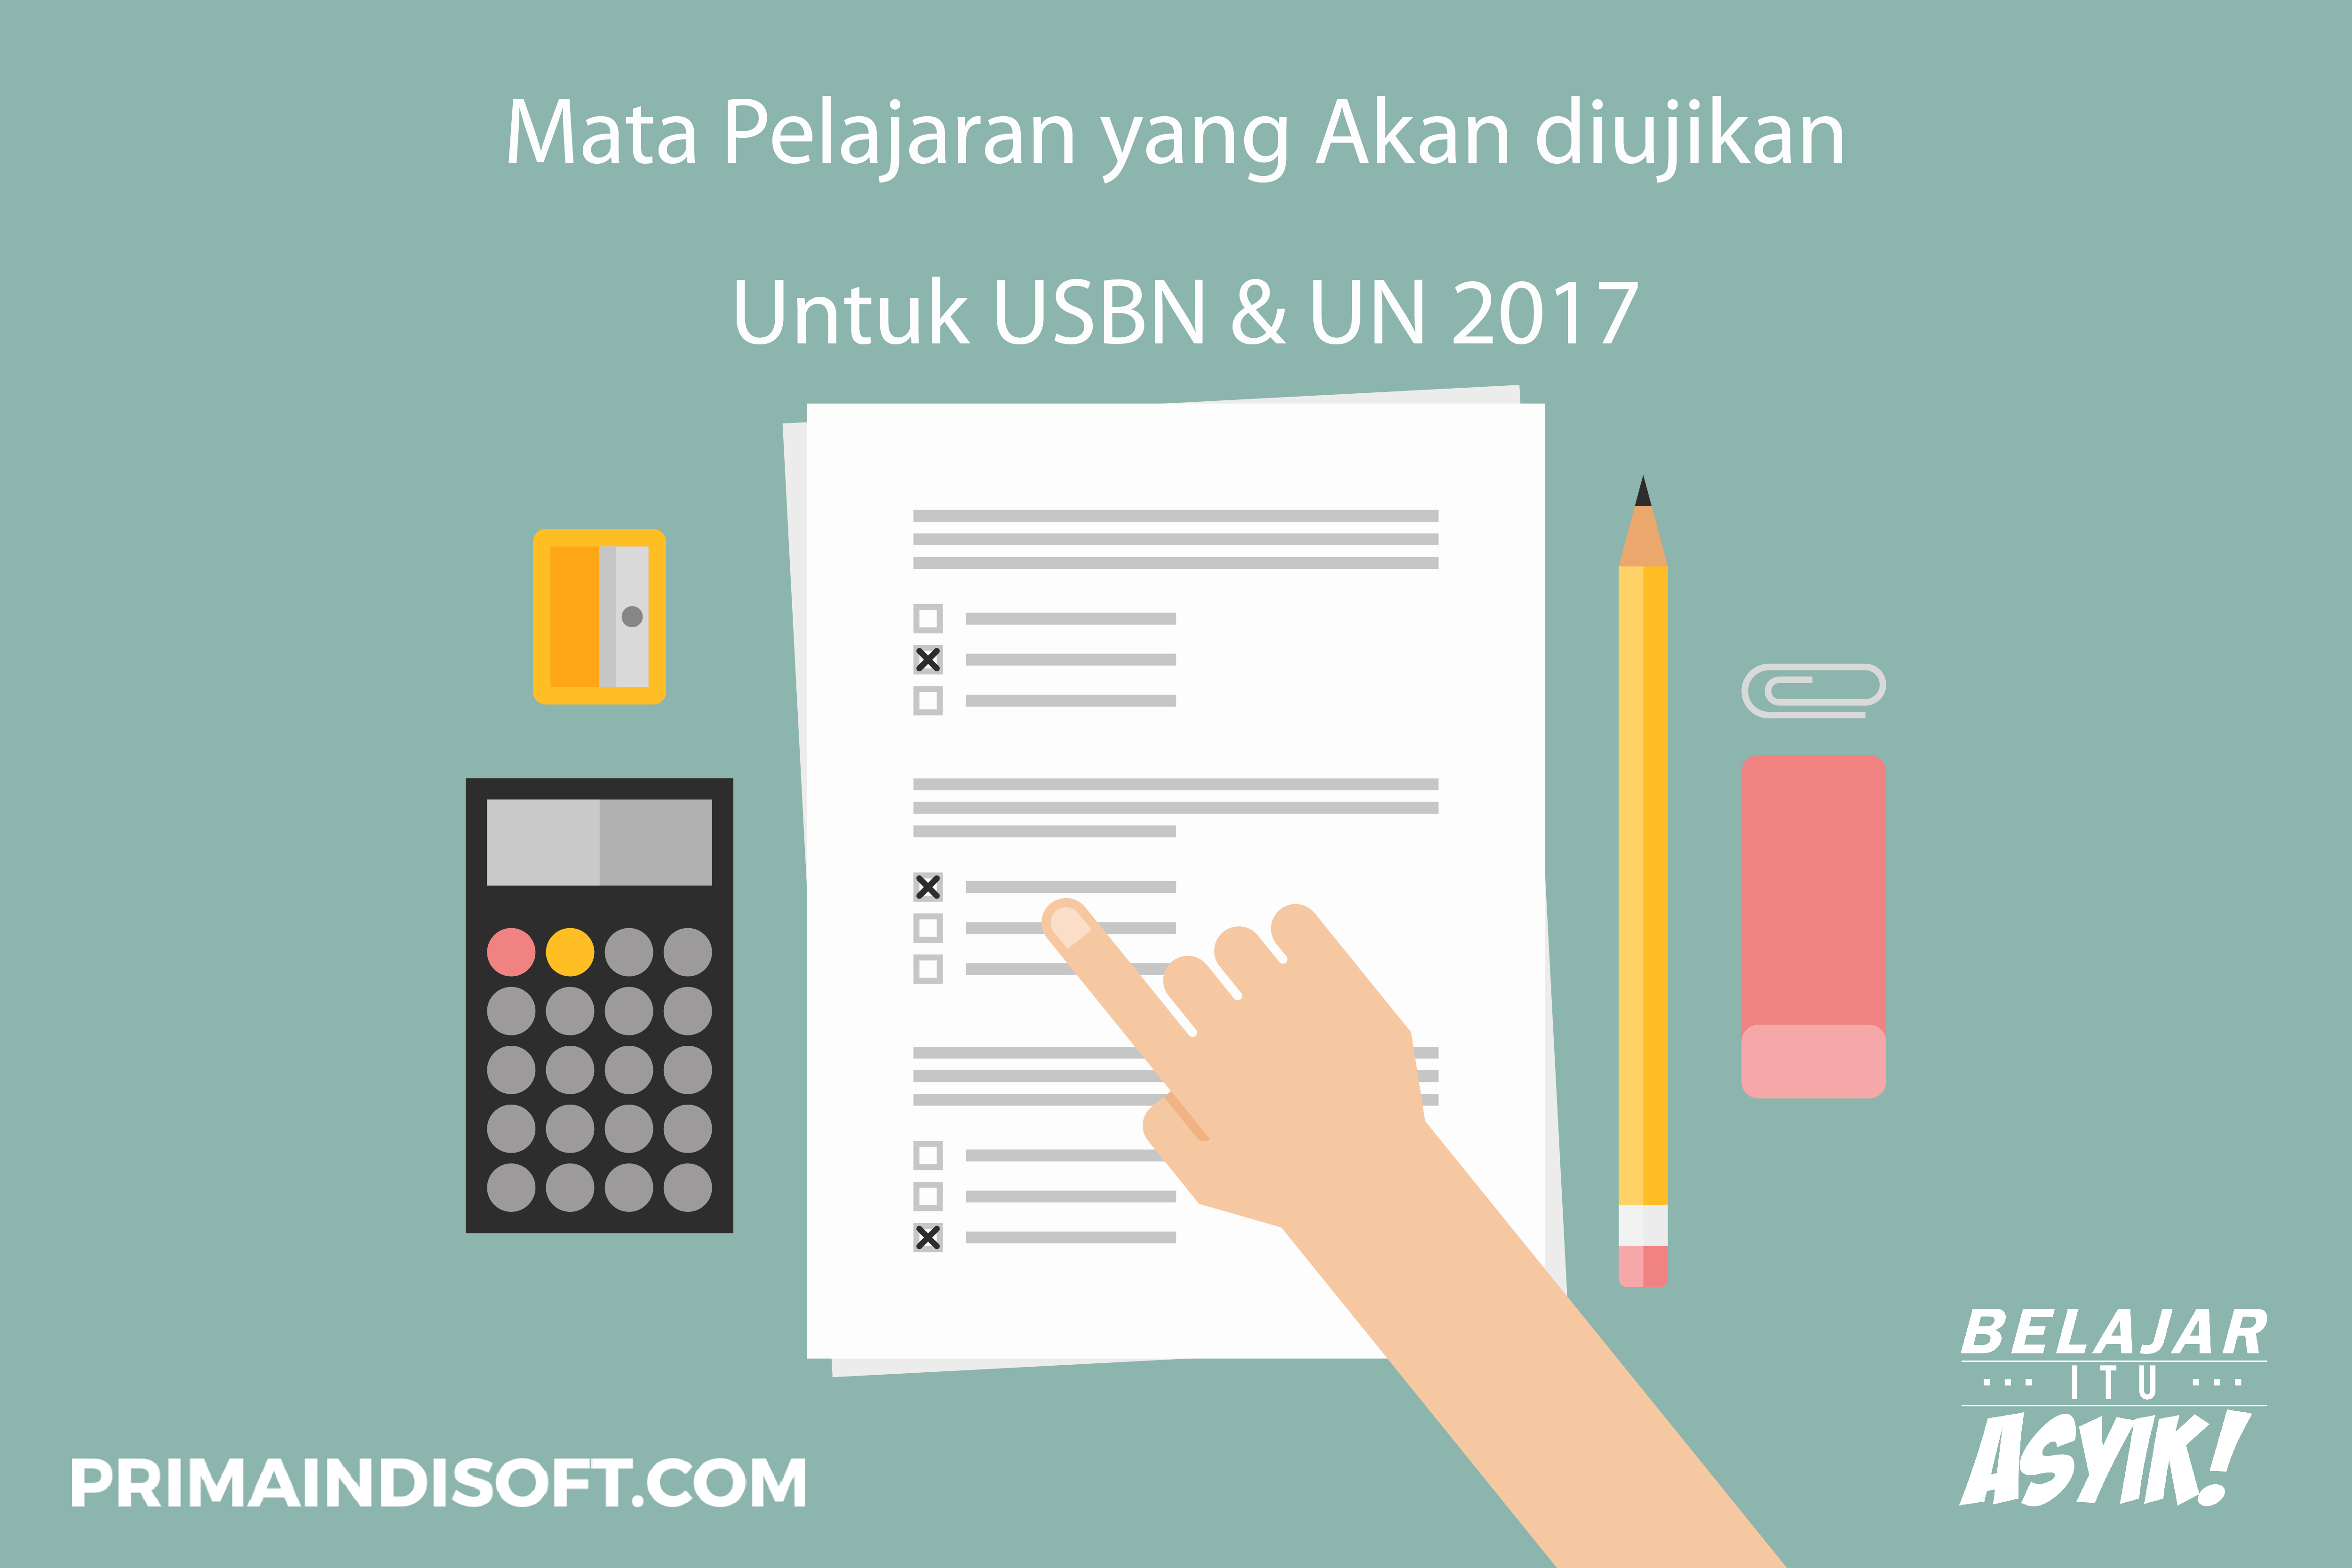 Mata Pelajaran yang Akan Diujikan untuk USBN dan UN 2017